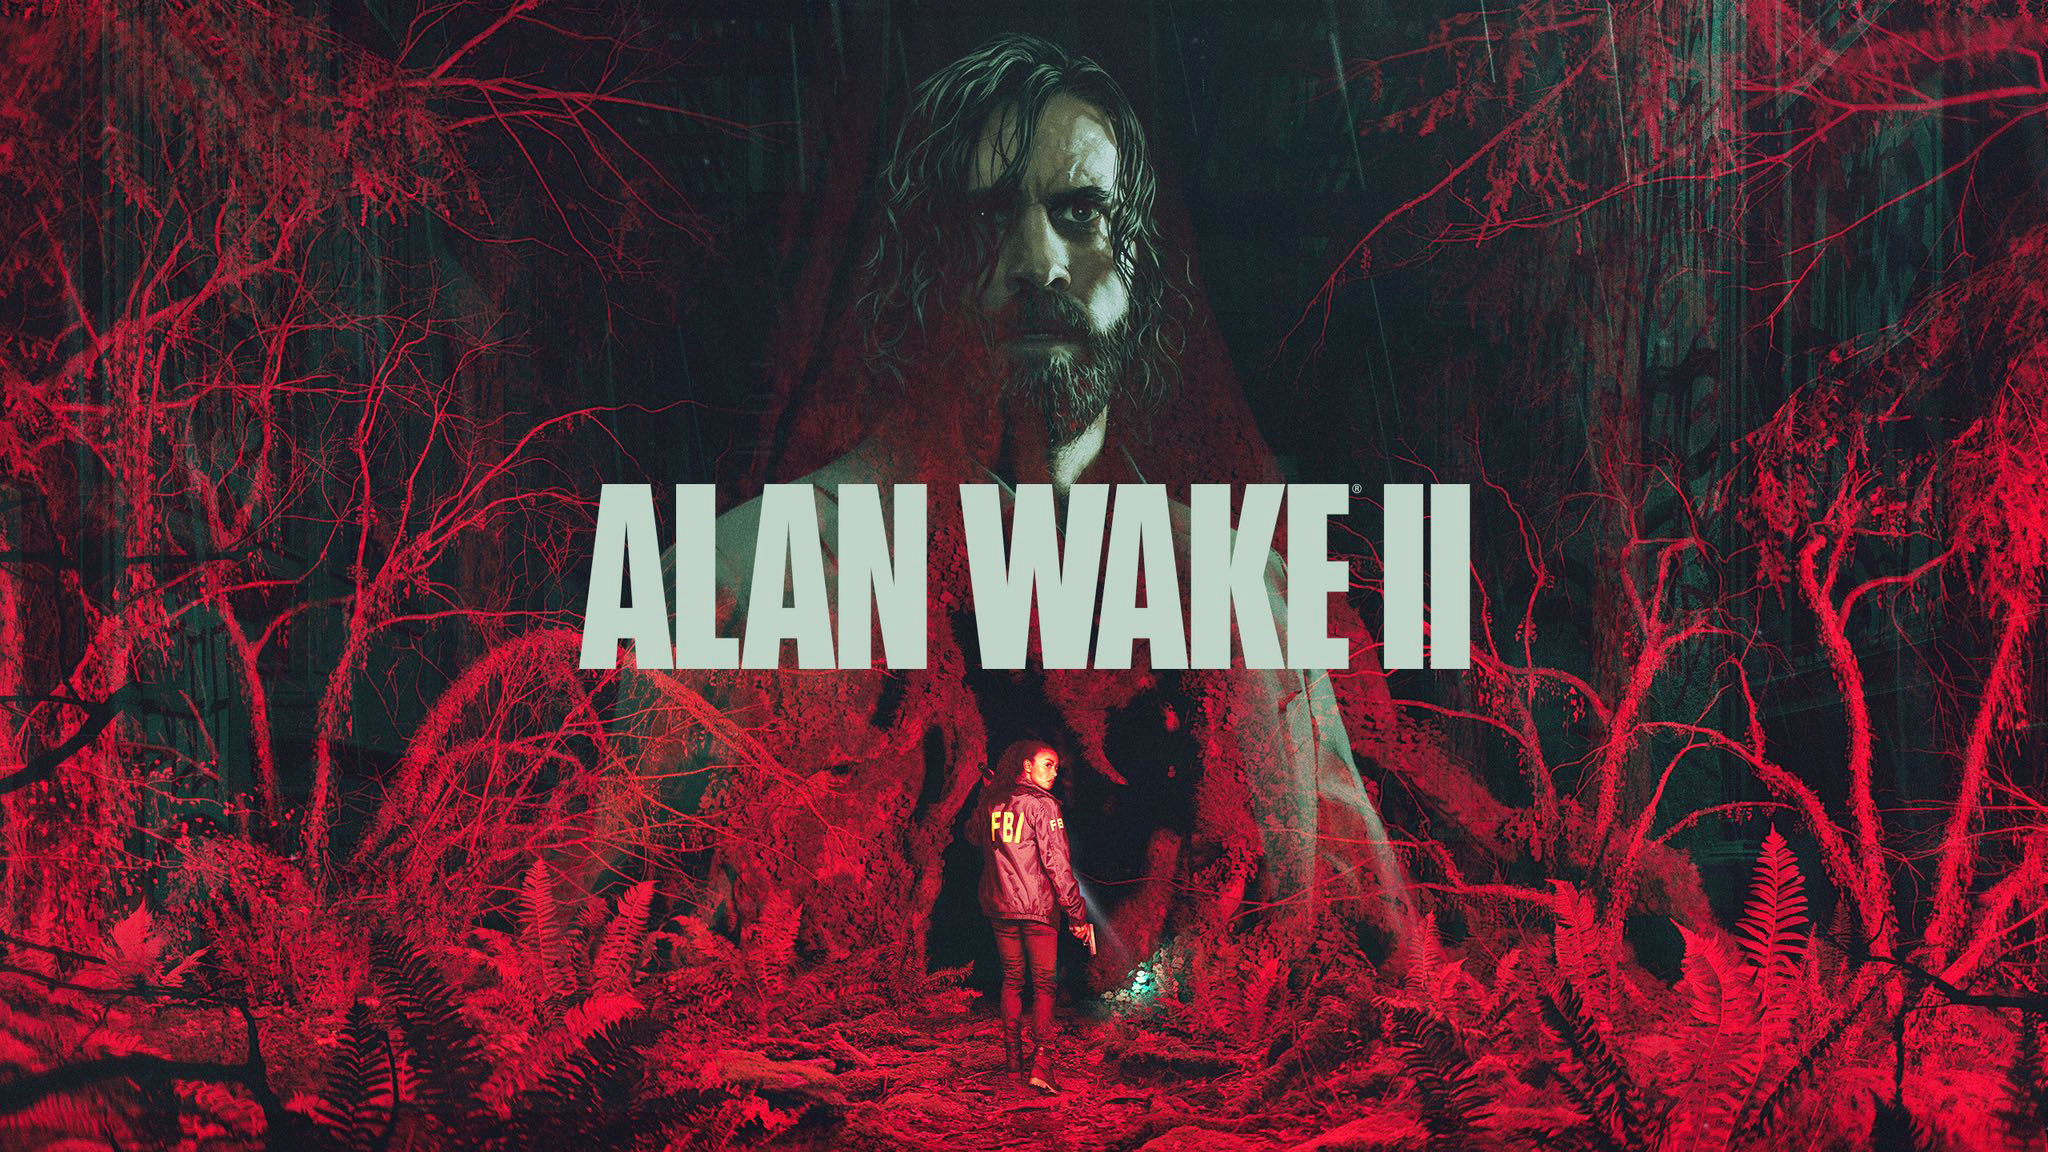 Alan Wake 2: Diese Fortsetzung stellt alles andere in den Schatten (spoilerfreies Review)